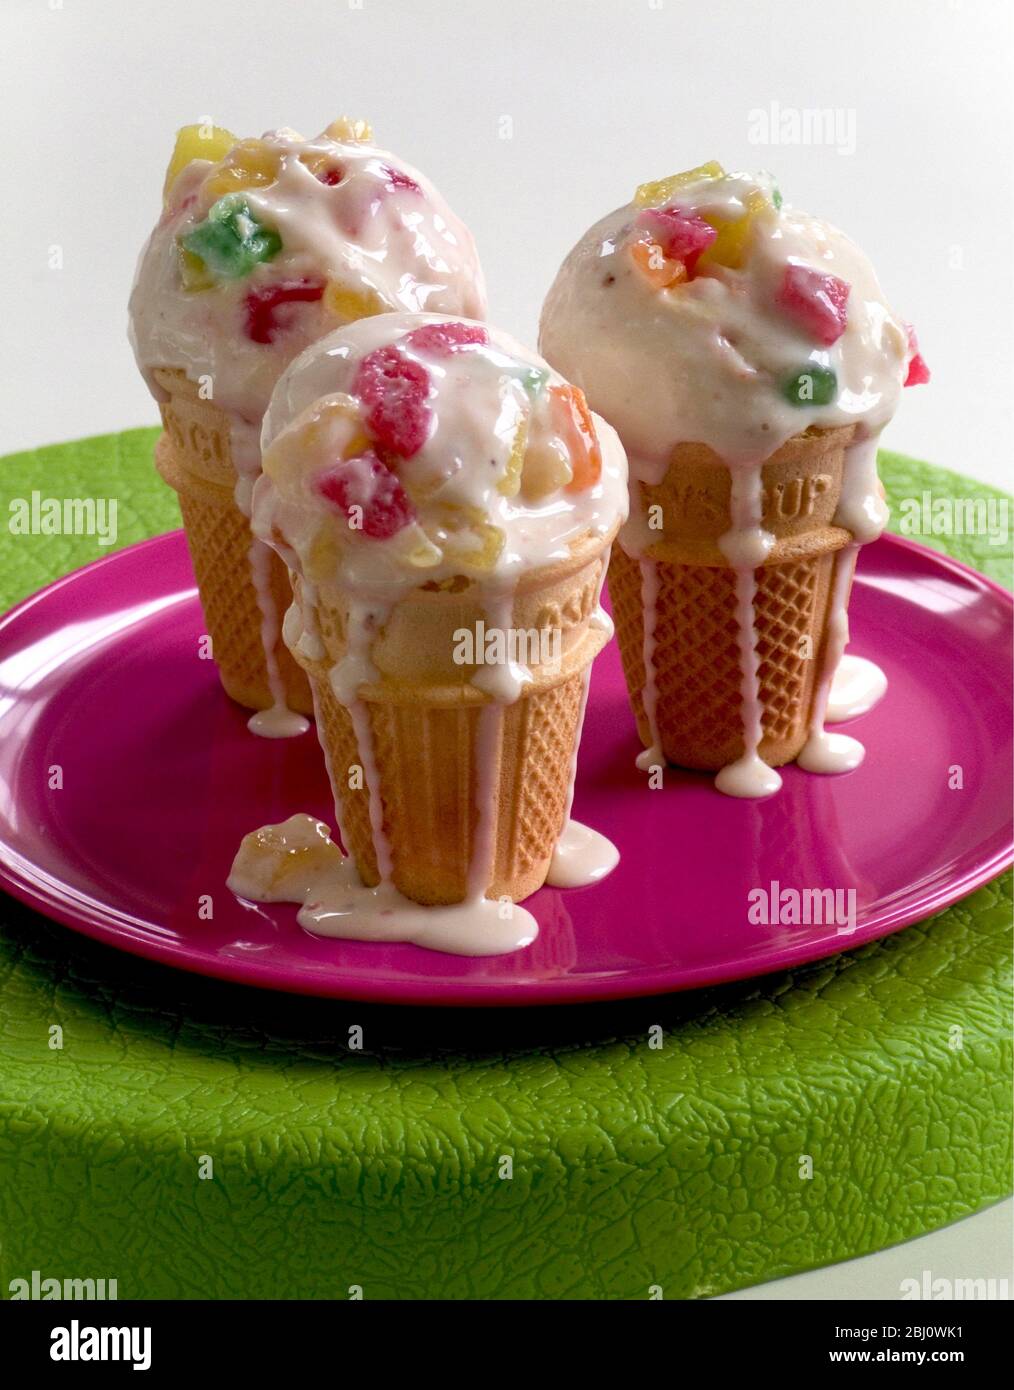 Tutti frutti ghiaccio ceam leggermente fondente in coni stand up su piastra rosa - Foto Stock